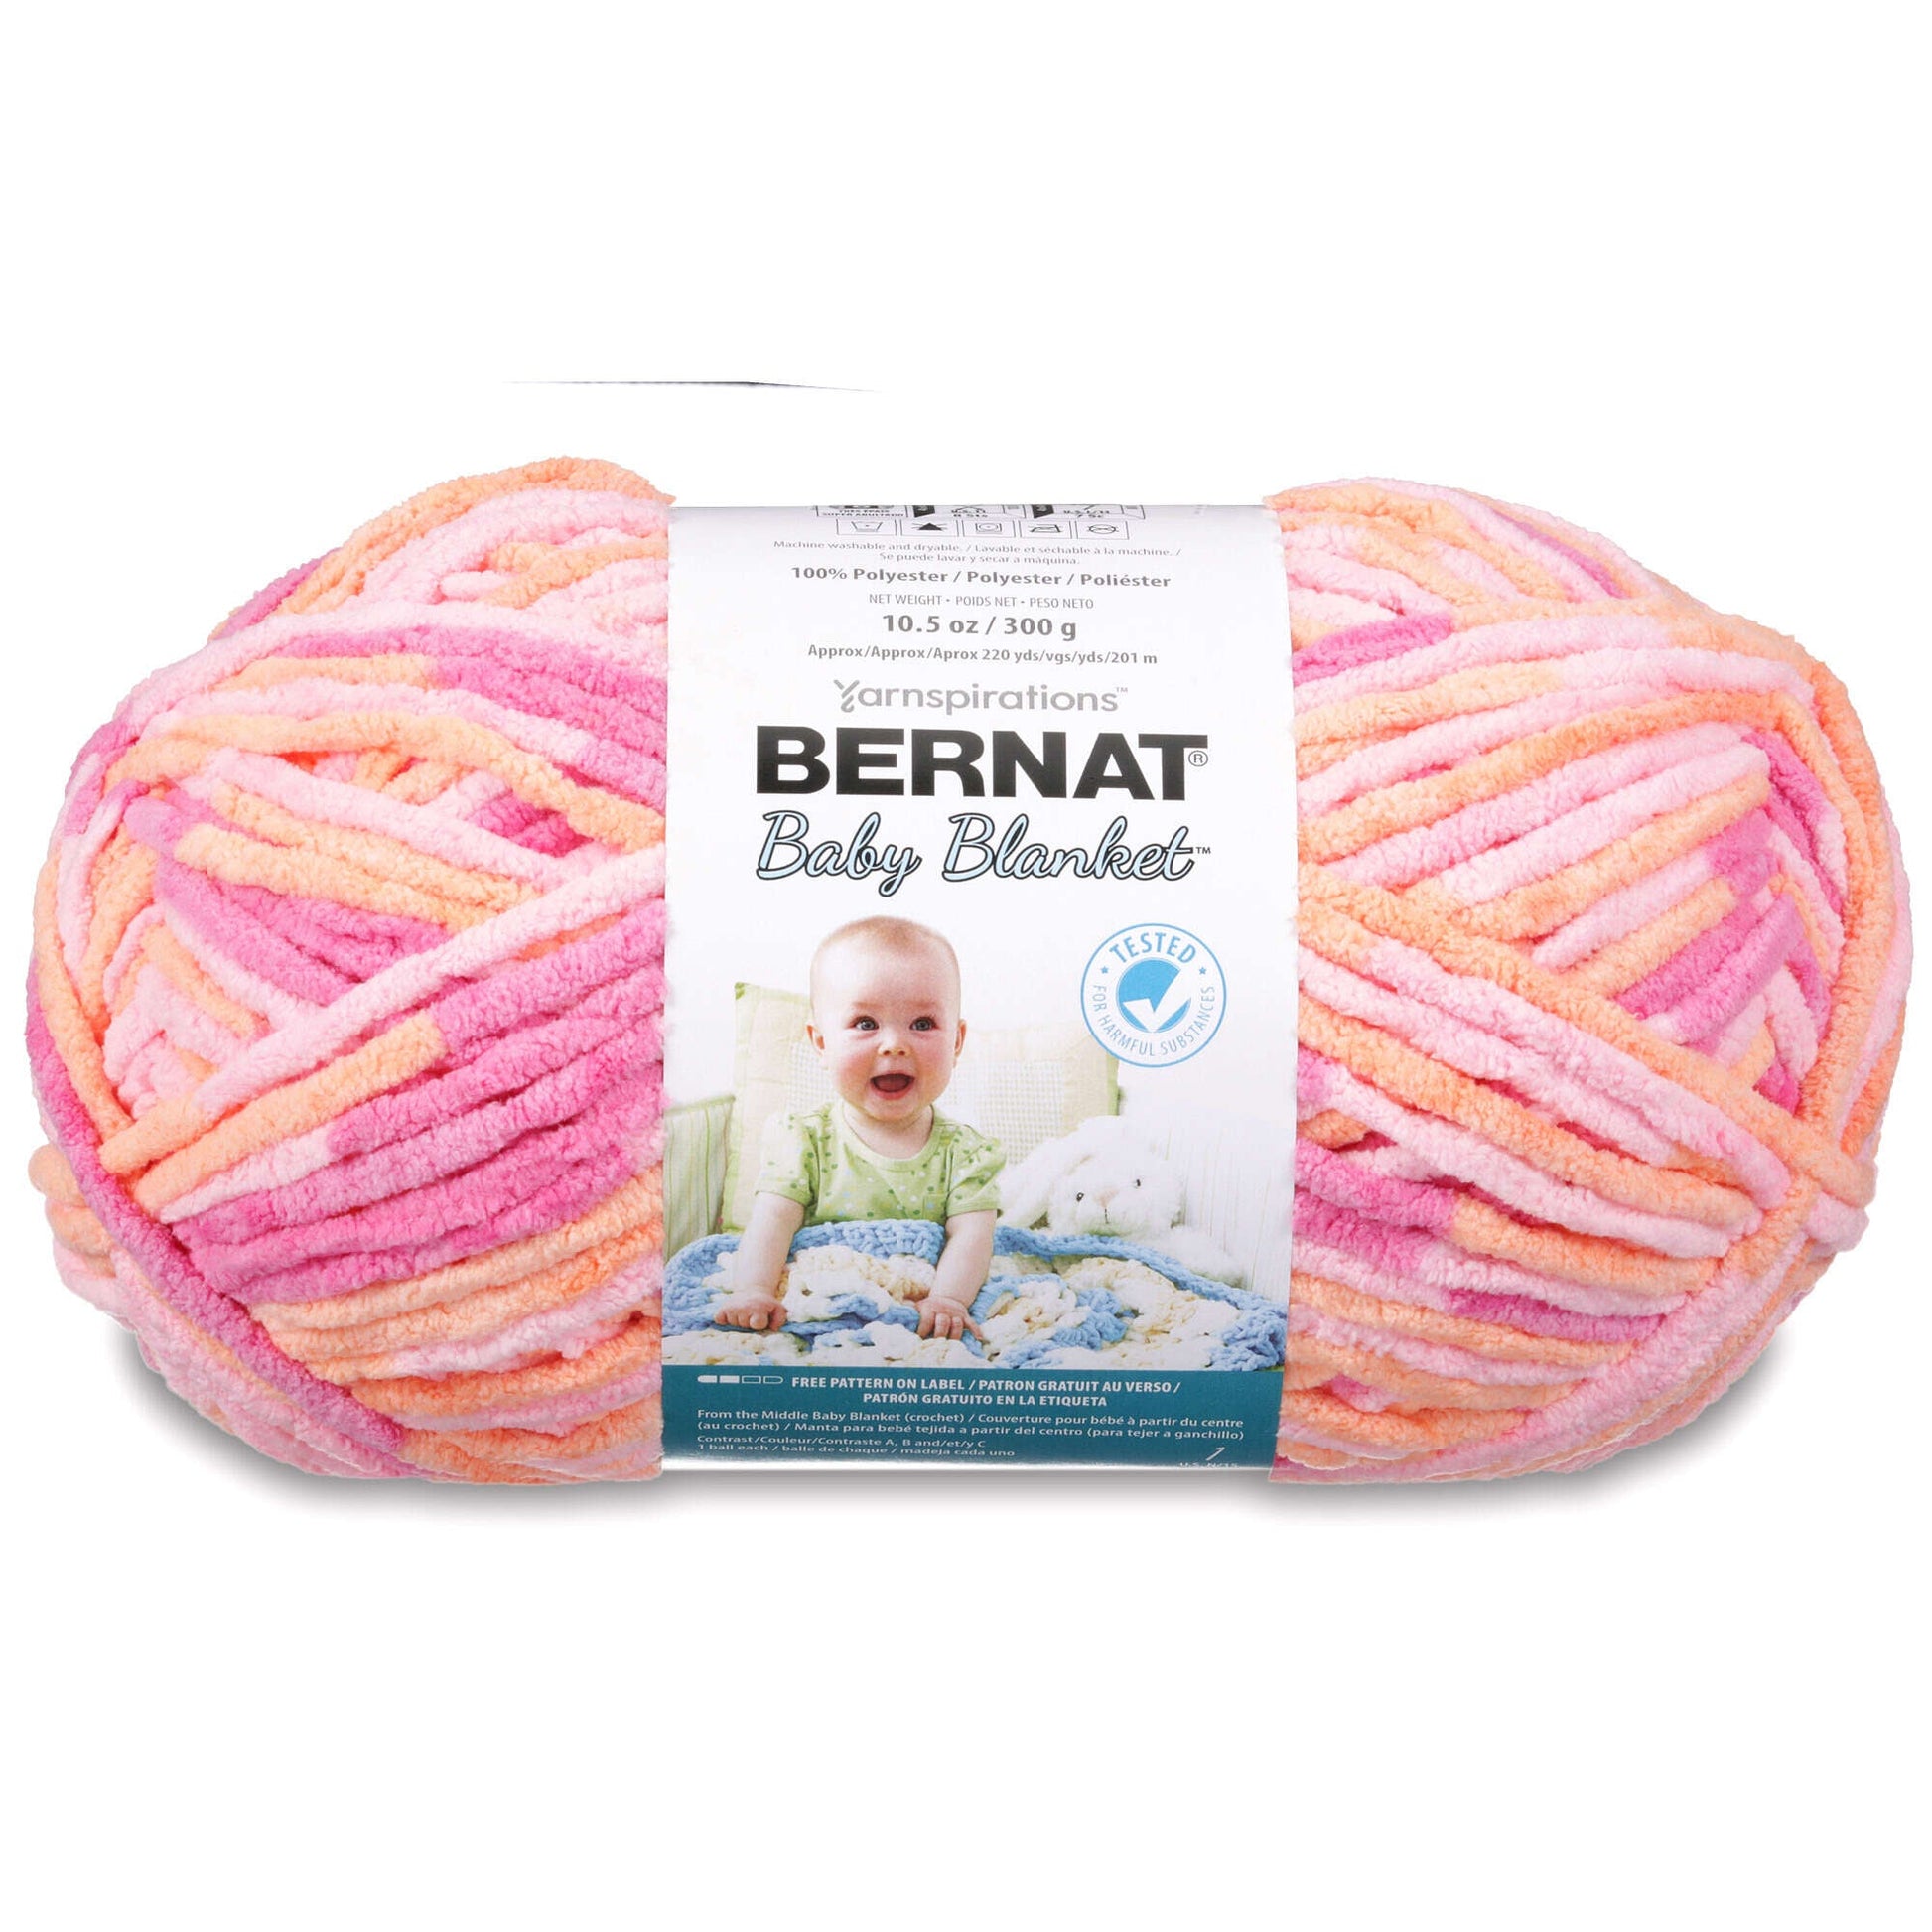 Bernat Blanket Big Yarn (300g/10.5oz) - Discontinued Shades